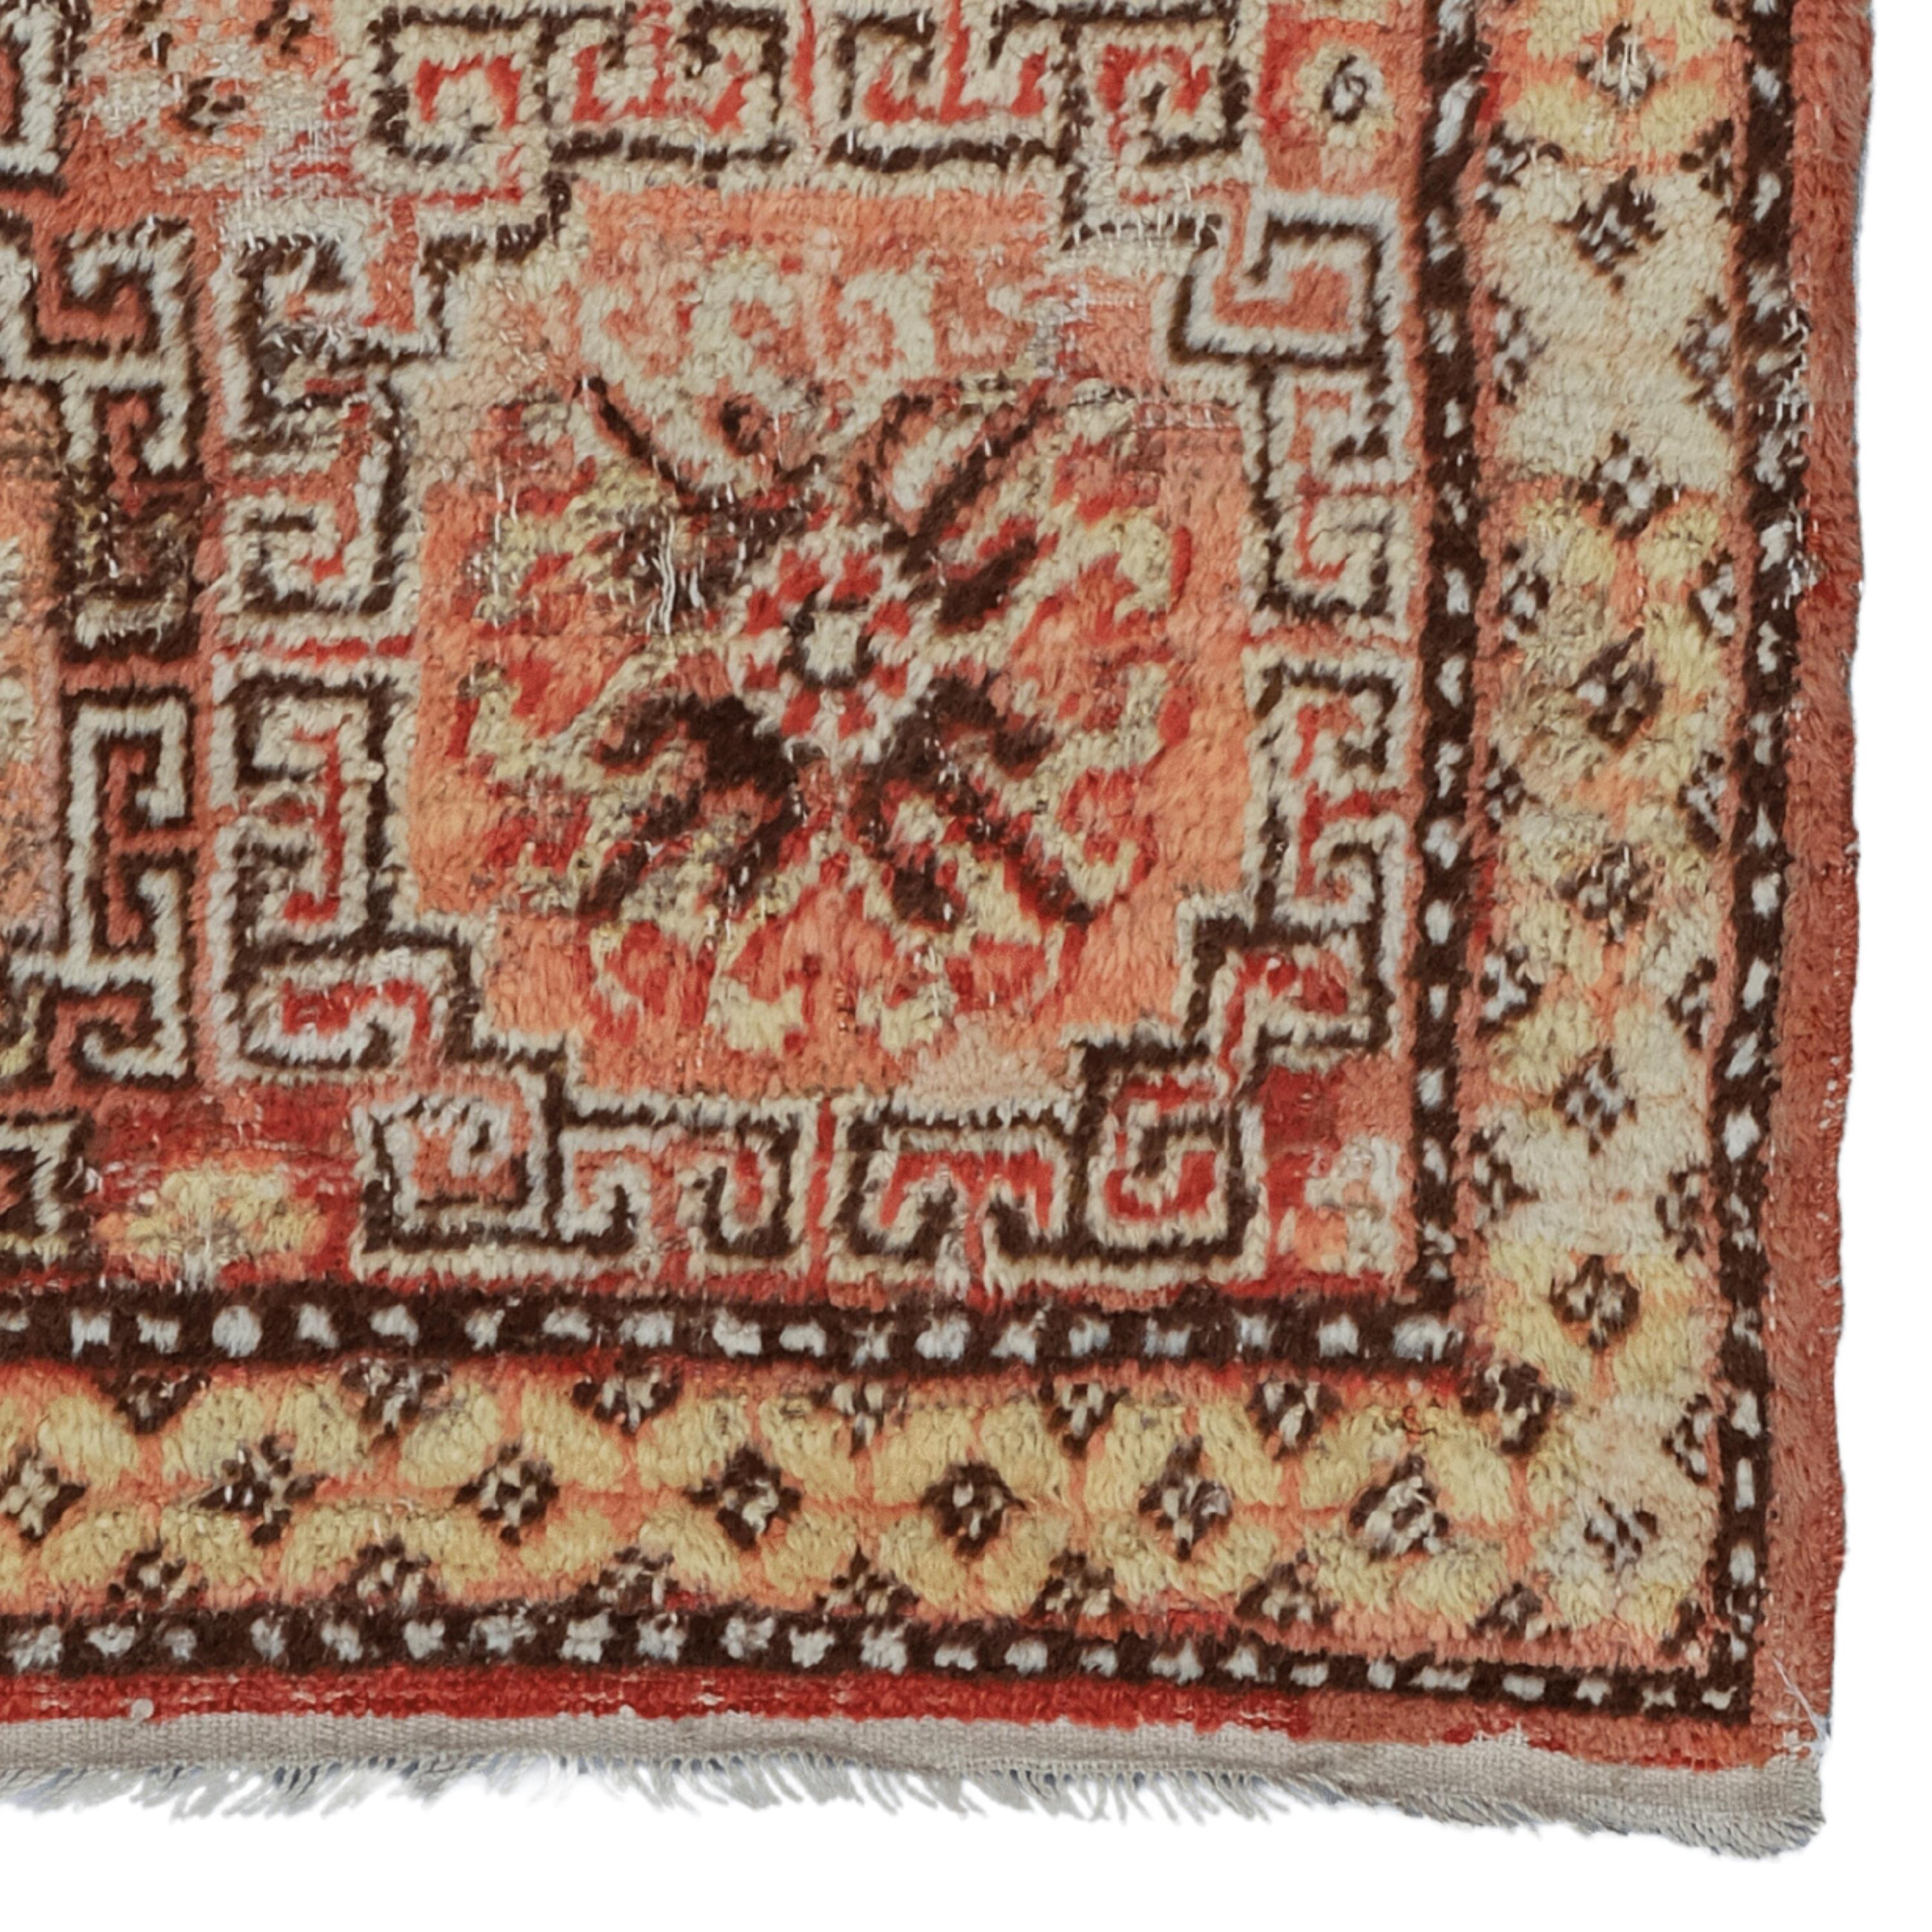 Wool Antique Khotan Rug - 19th Century Khotan Rug, Handwoven Turkish Rug, Antique Rug For Sale